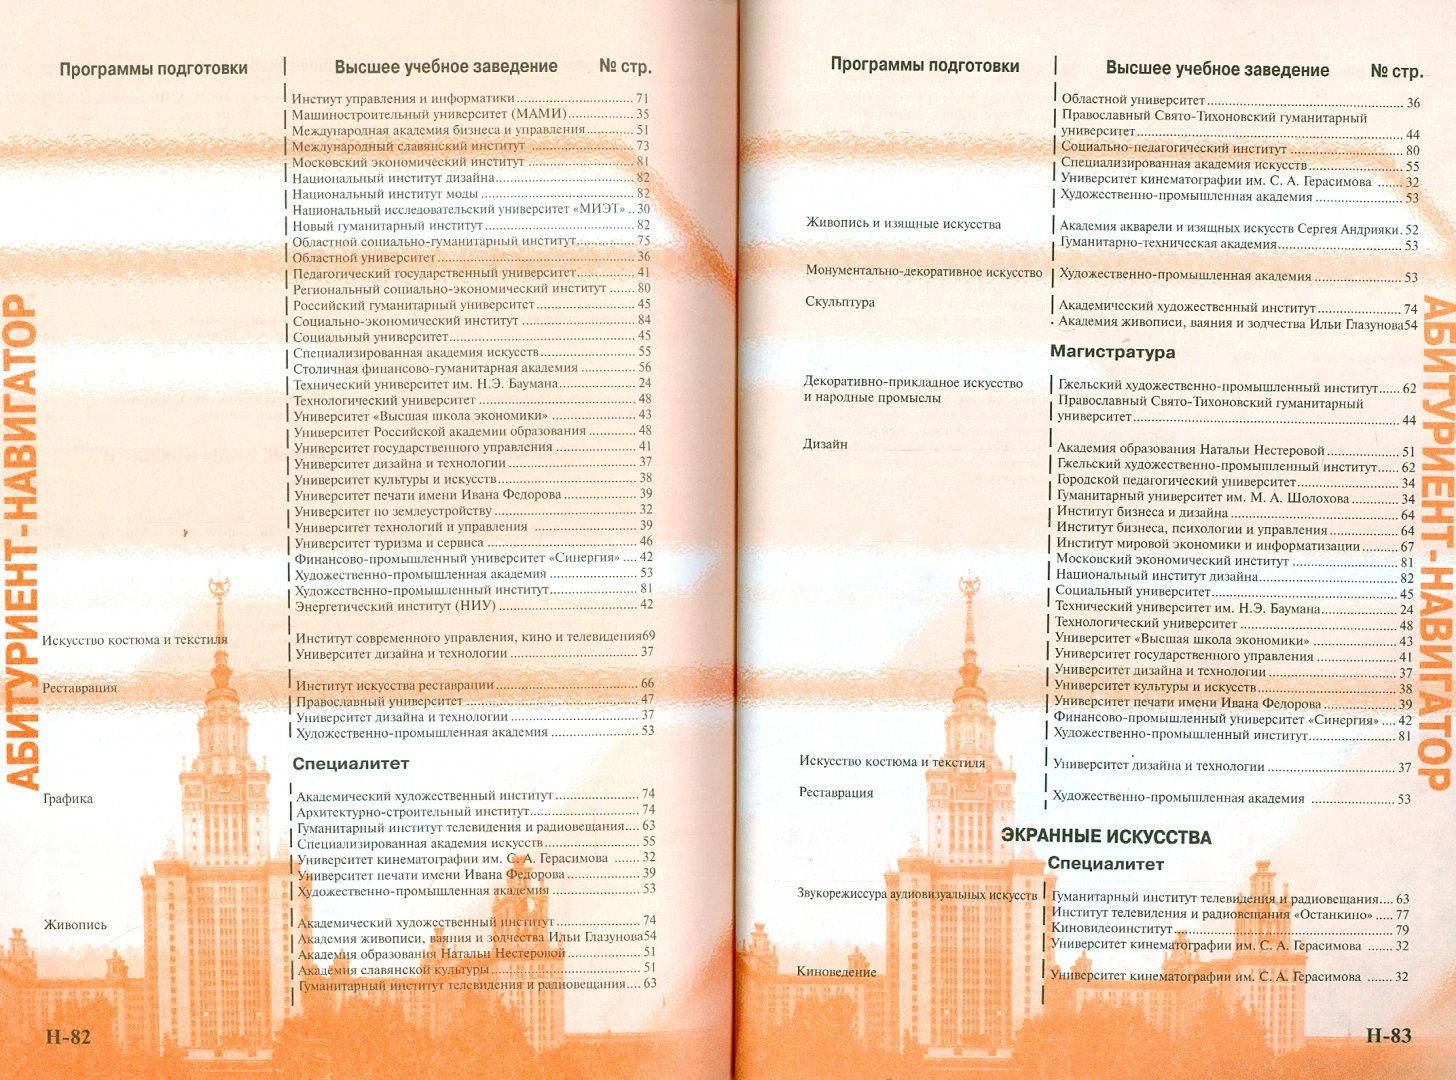 Мгу список специальностей. Вузы Москвы инфографика.